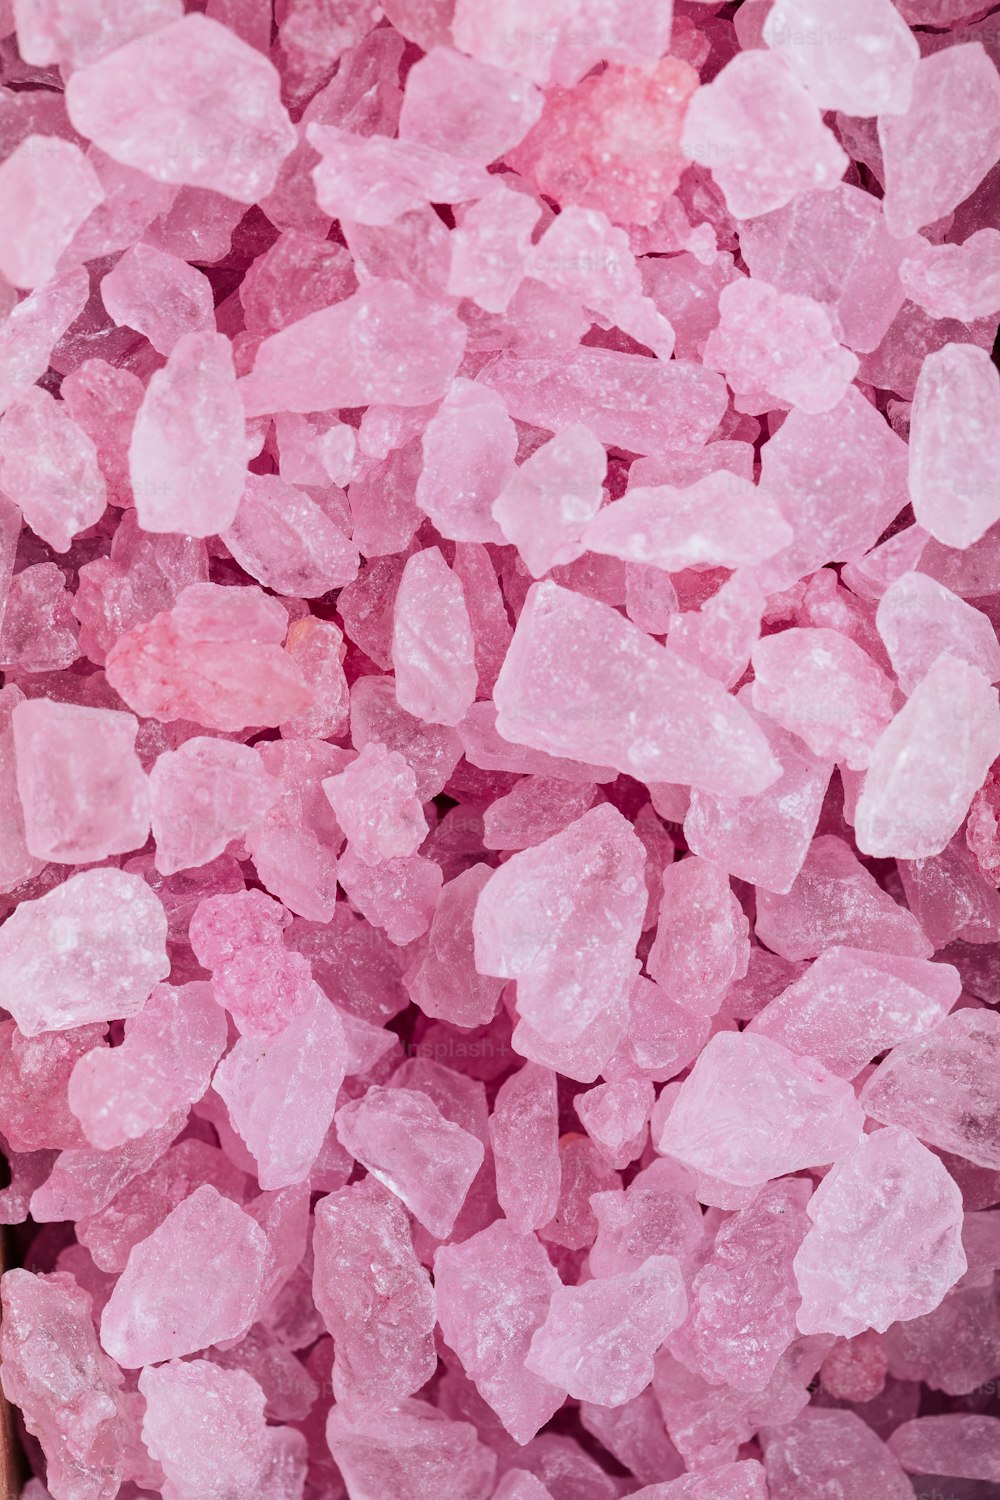 un tas de cristaux de sucre rose assis sur une table